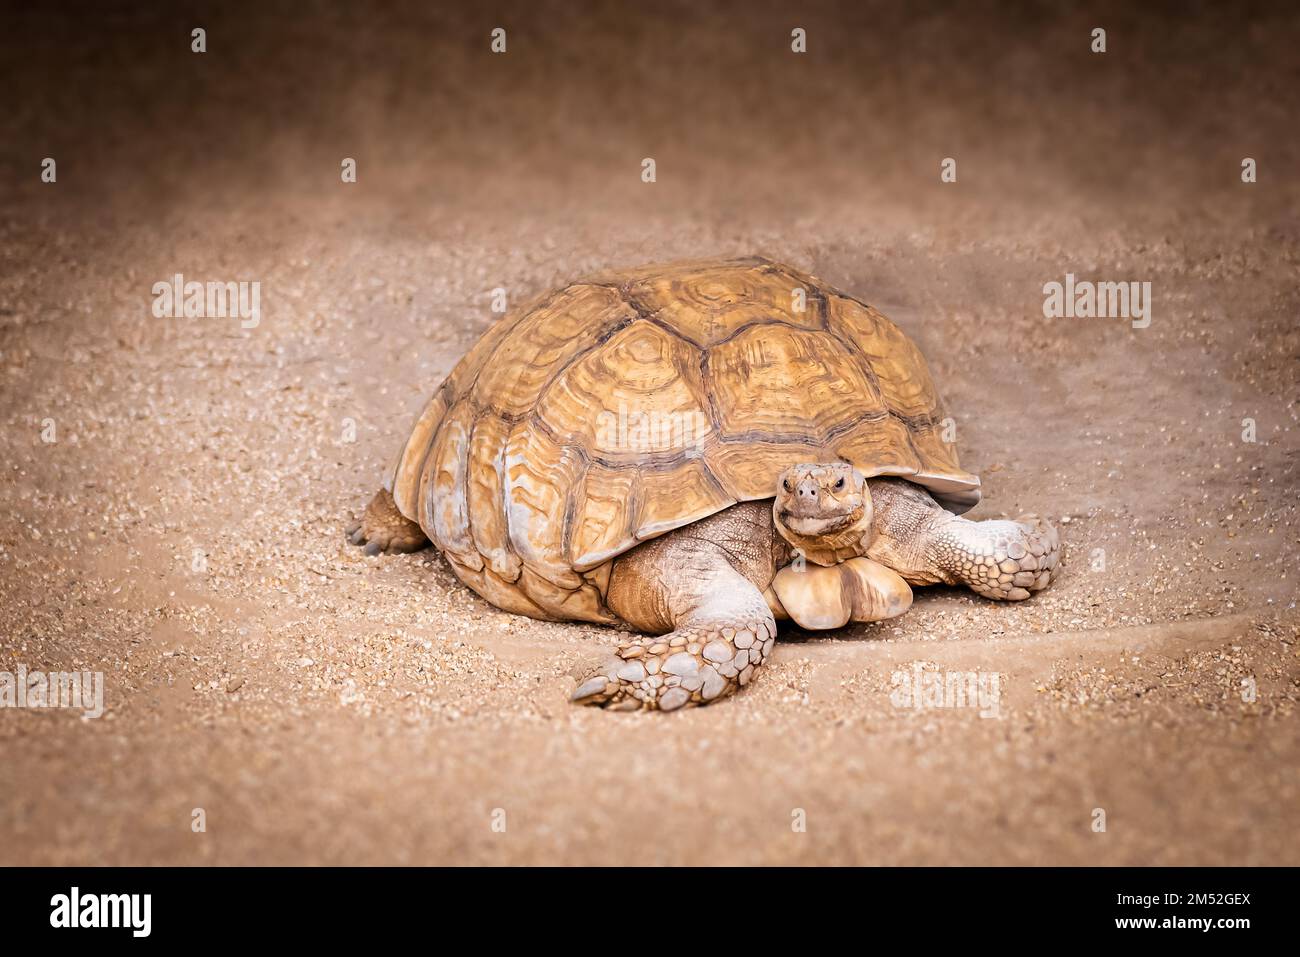 Tortoise walking slowly on dusty earth ground hard shelled animal Stock Photo